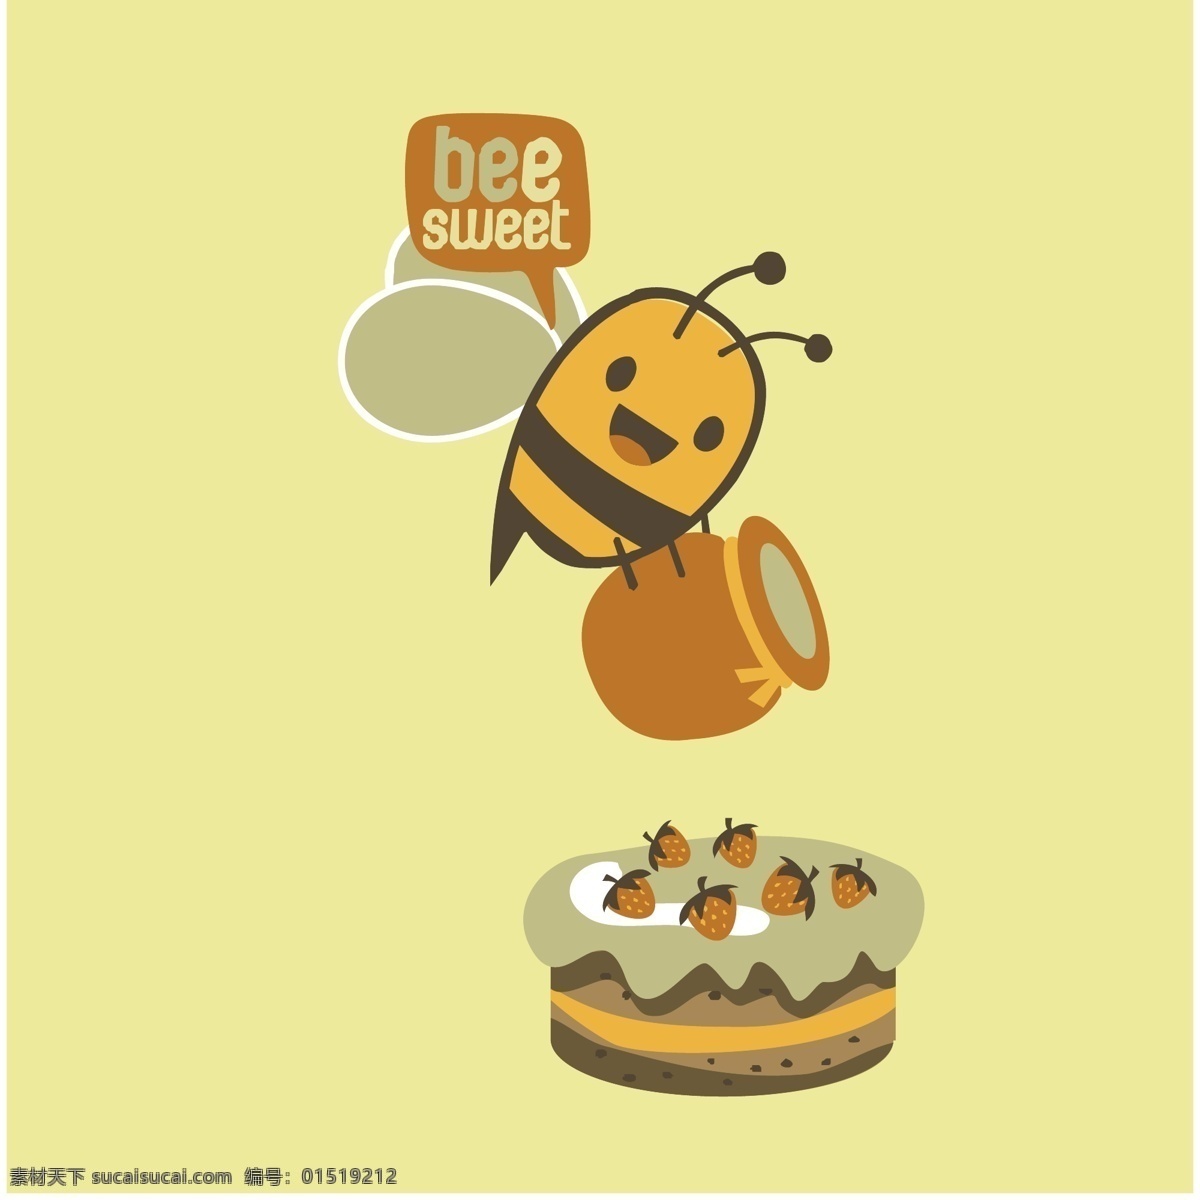 卡通 蜜蜂 采 蜜 卡通昆虫 卡通蜜蜂图案 蜂蜜 采蜜的小蜜蜂 勤劳的蜜蜂 卡通设计